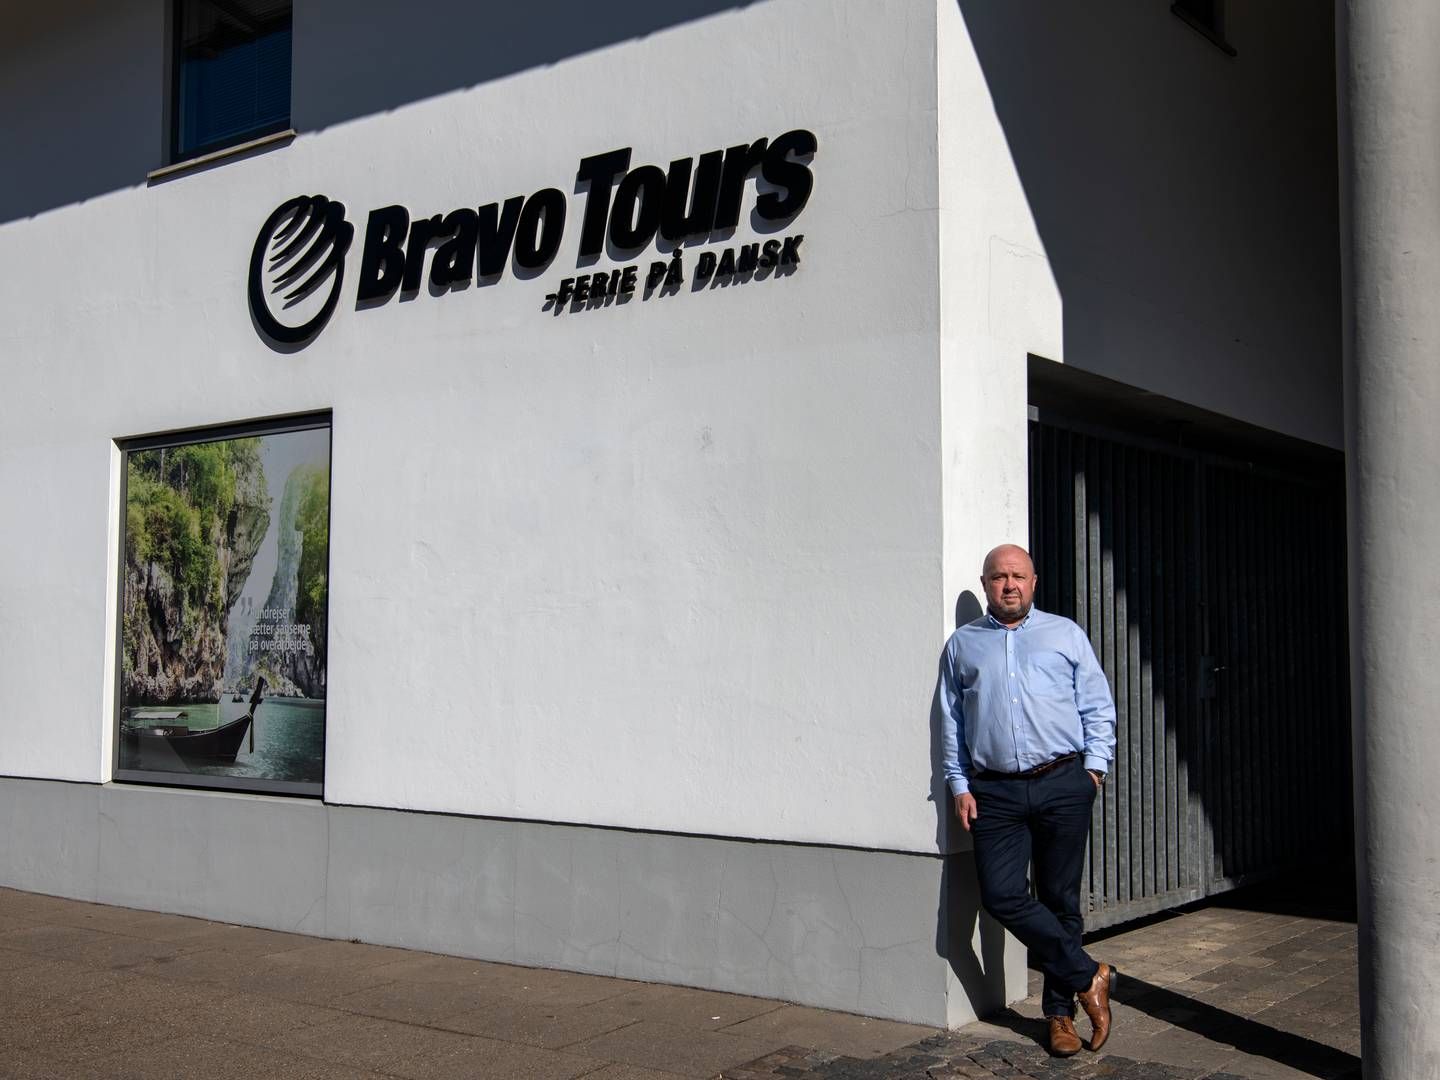 Bravo Tours blev stiftet i 1998. Siden starten har Peder Hornshøj siddet som direktør, og det ventes han fortsat at gøre i den nye konstellation. | Foto: Marie Ravn